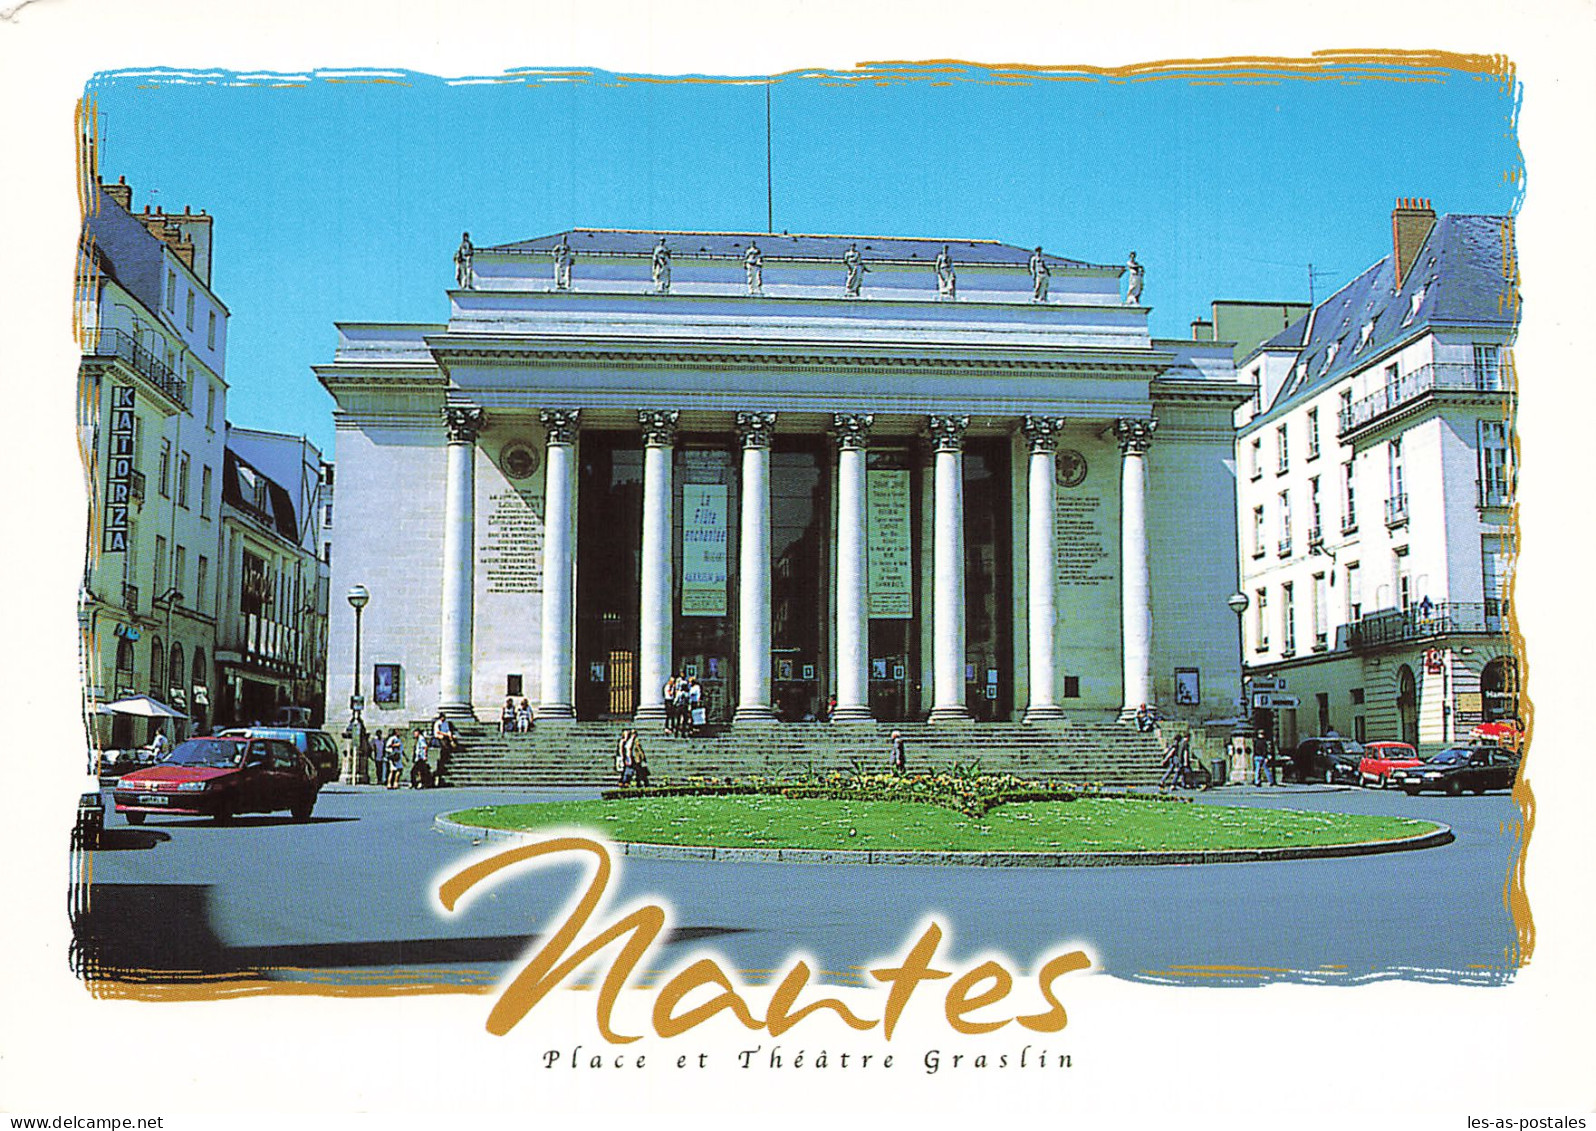 44 NANTES PLACE ET THEATRE GRASLIN - Nantes